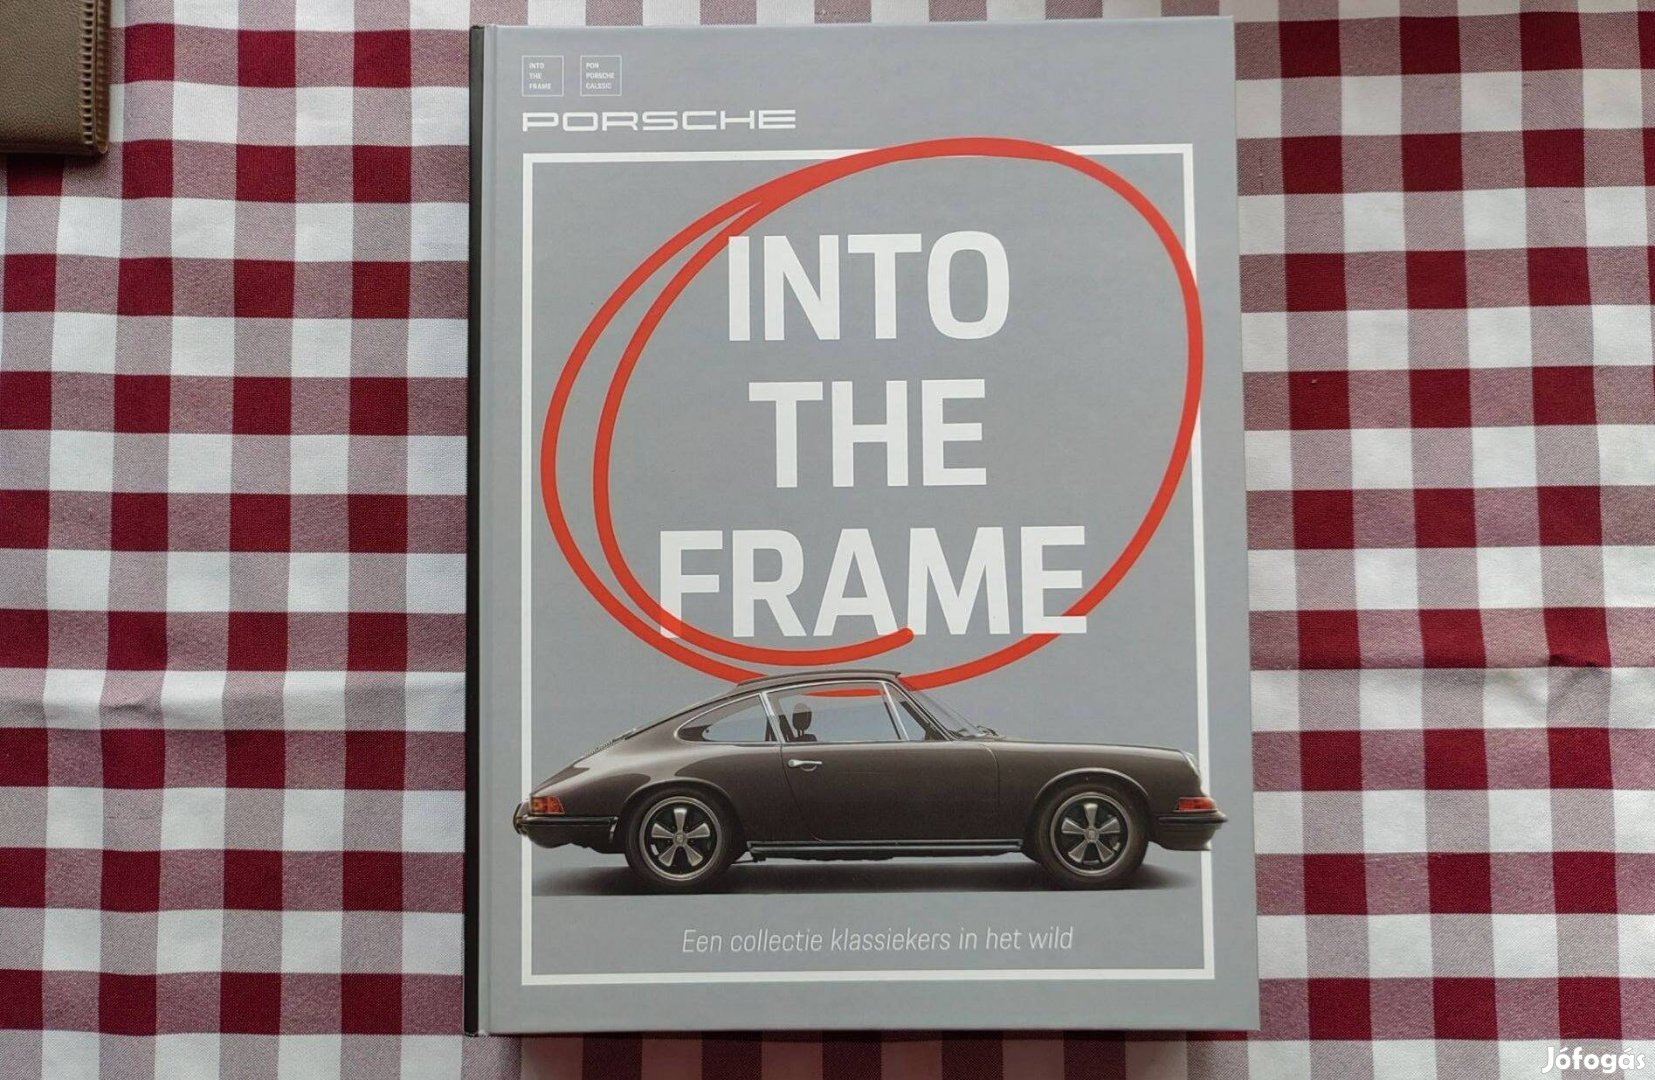 Porsche - Into the frame